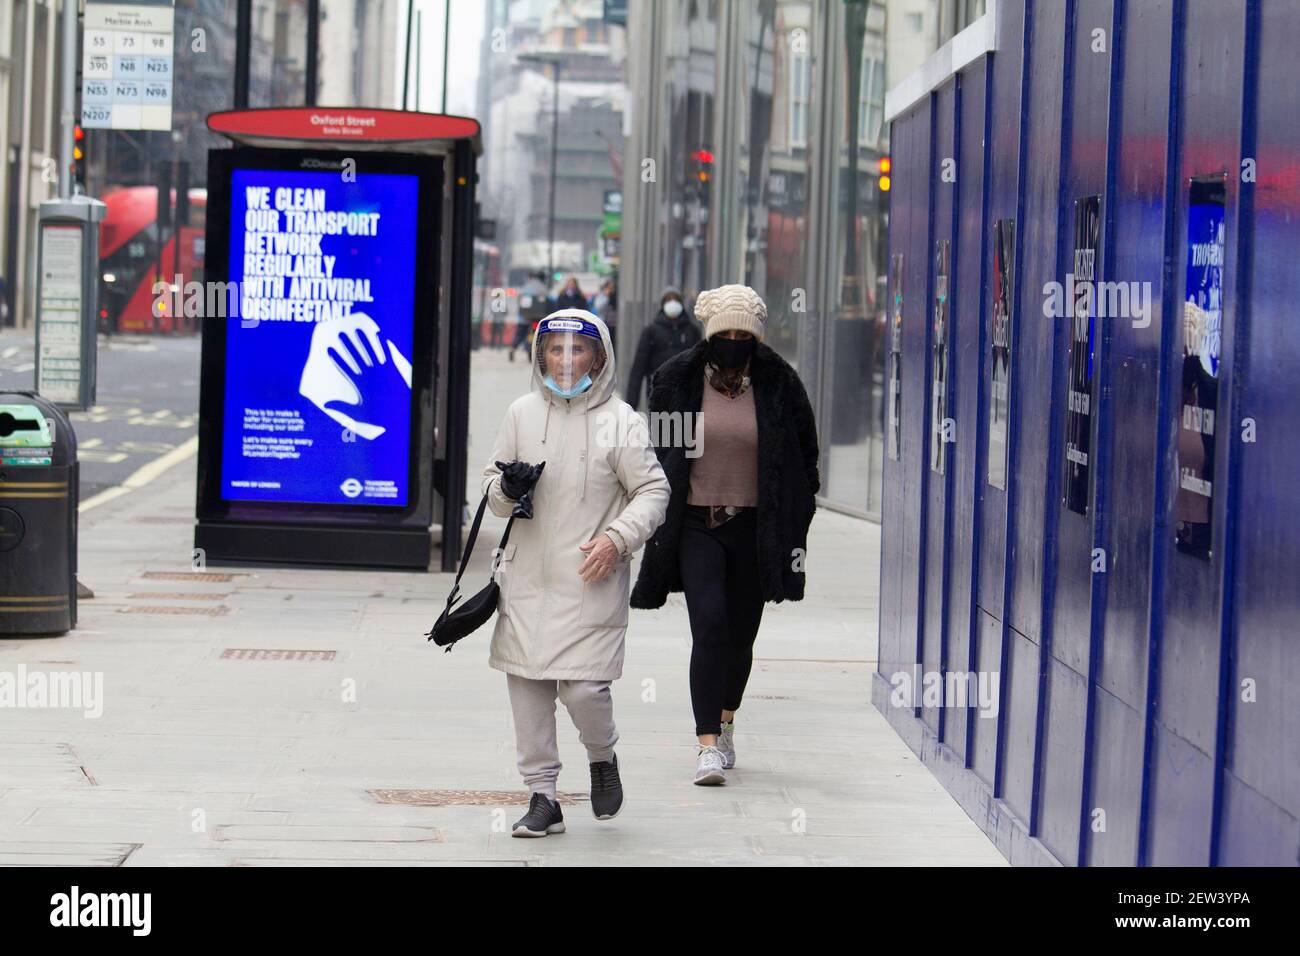 Oxford Street London, pendant le confinement de la pandémie Covid-19 du coronavirus, une femme portant un masque de protection individuelle passe devant l'affiche d'information Covid Banque D'Images